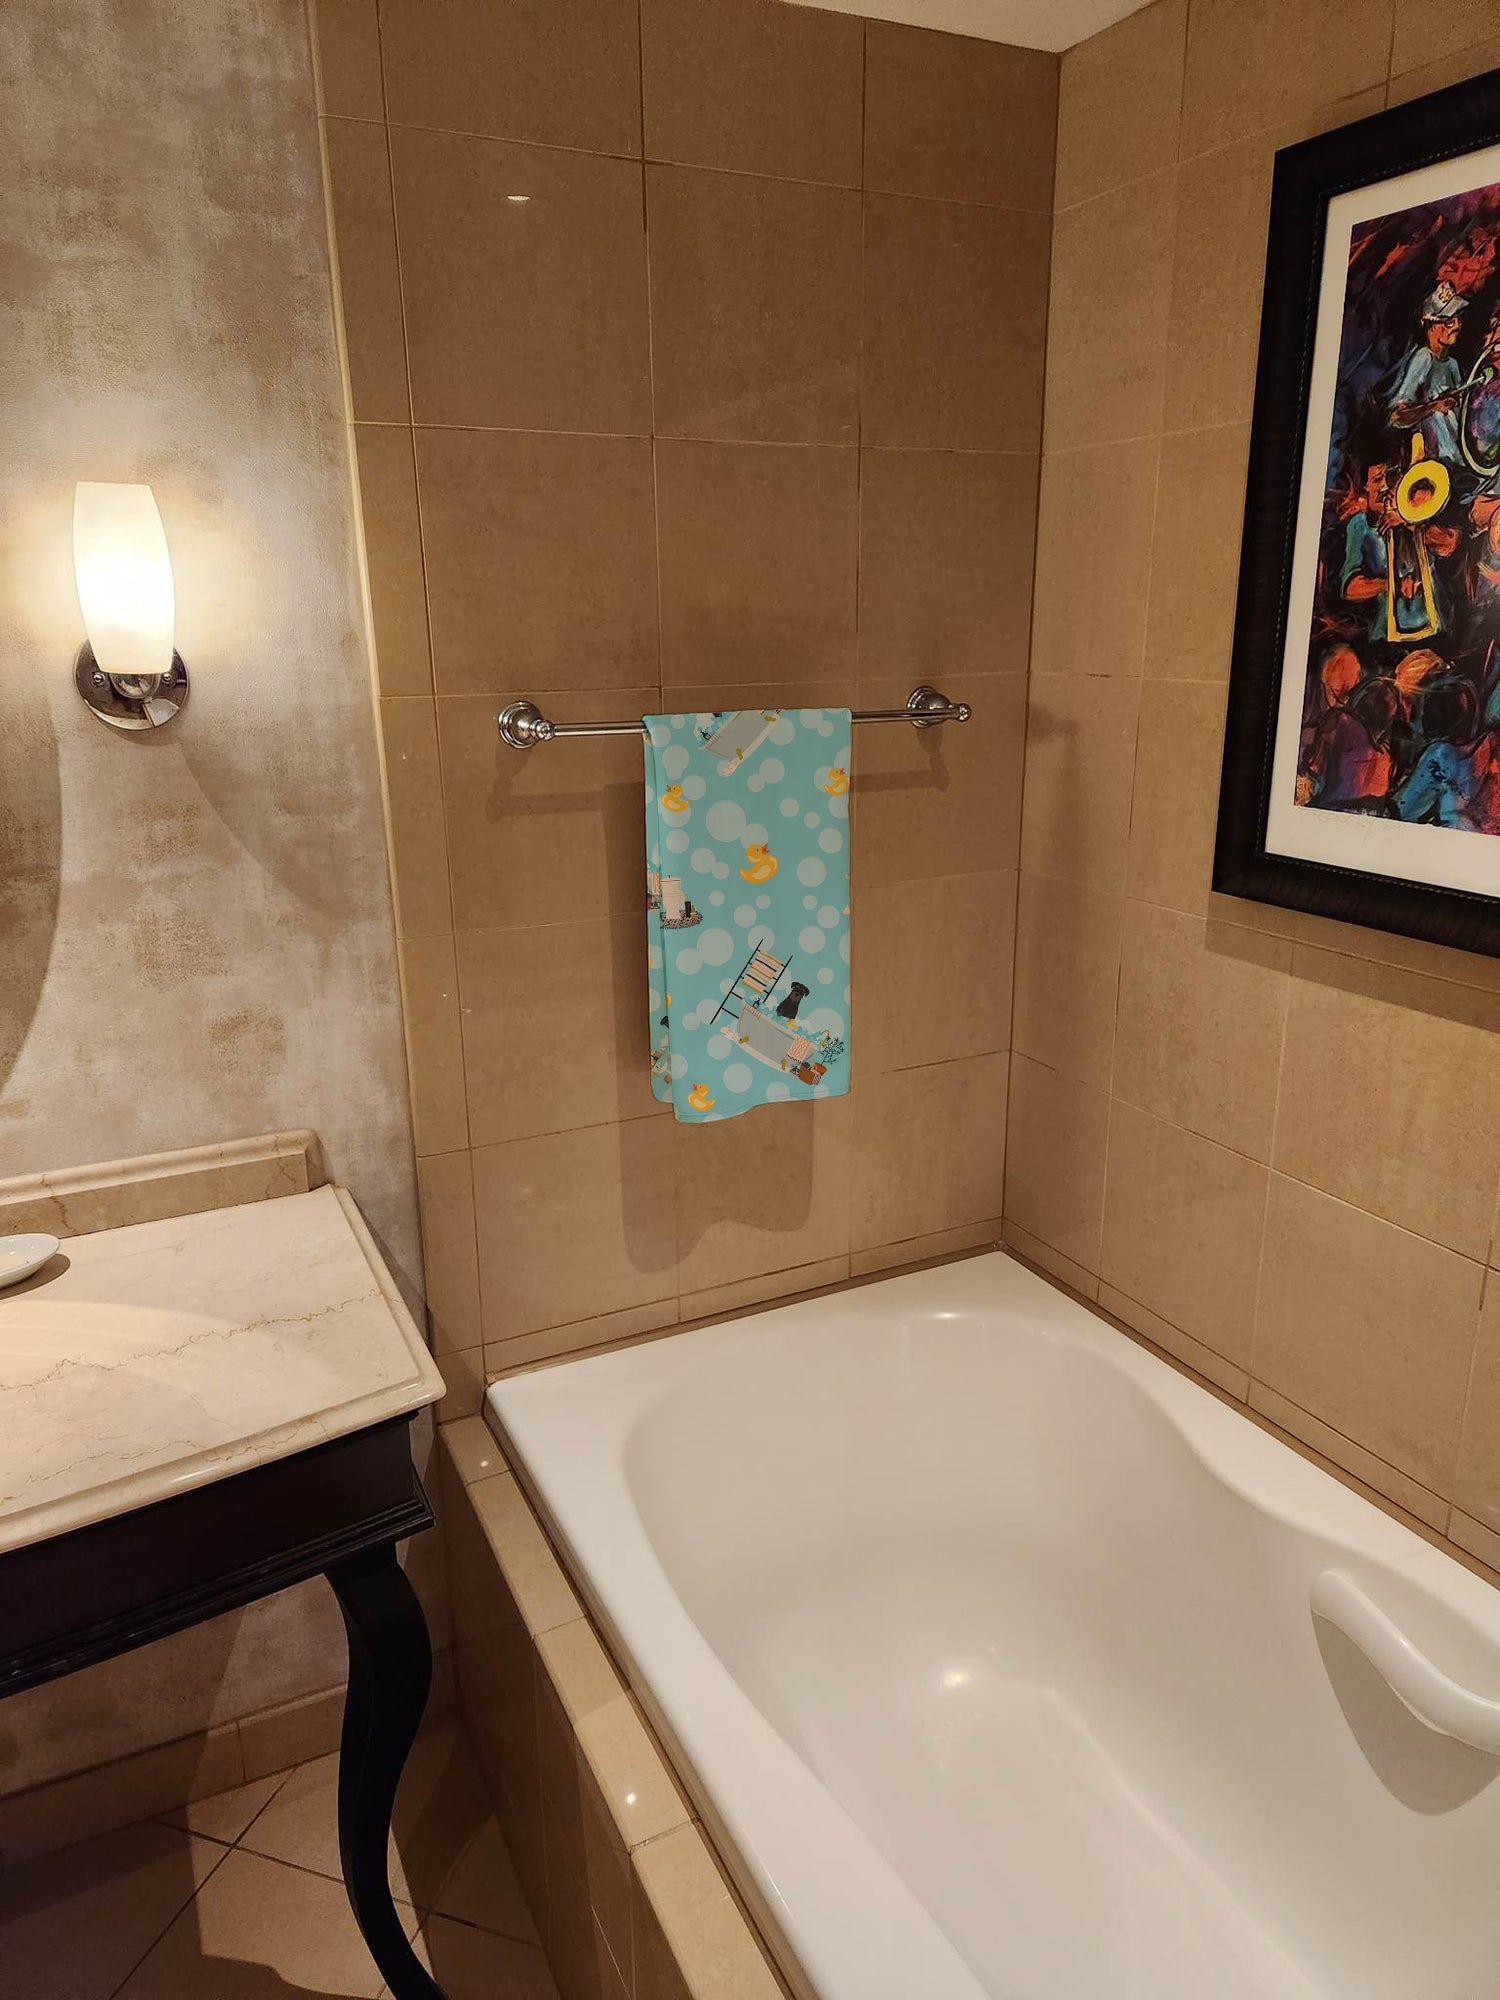 Black Standard Schnauzer in Bathtub Bath Towel Large